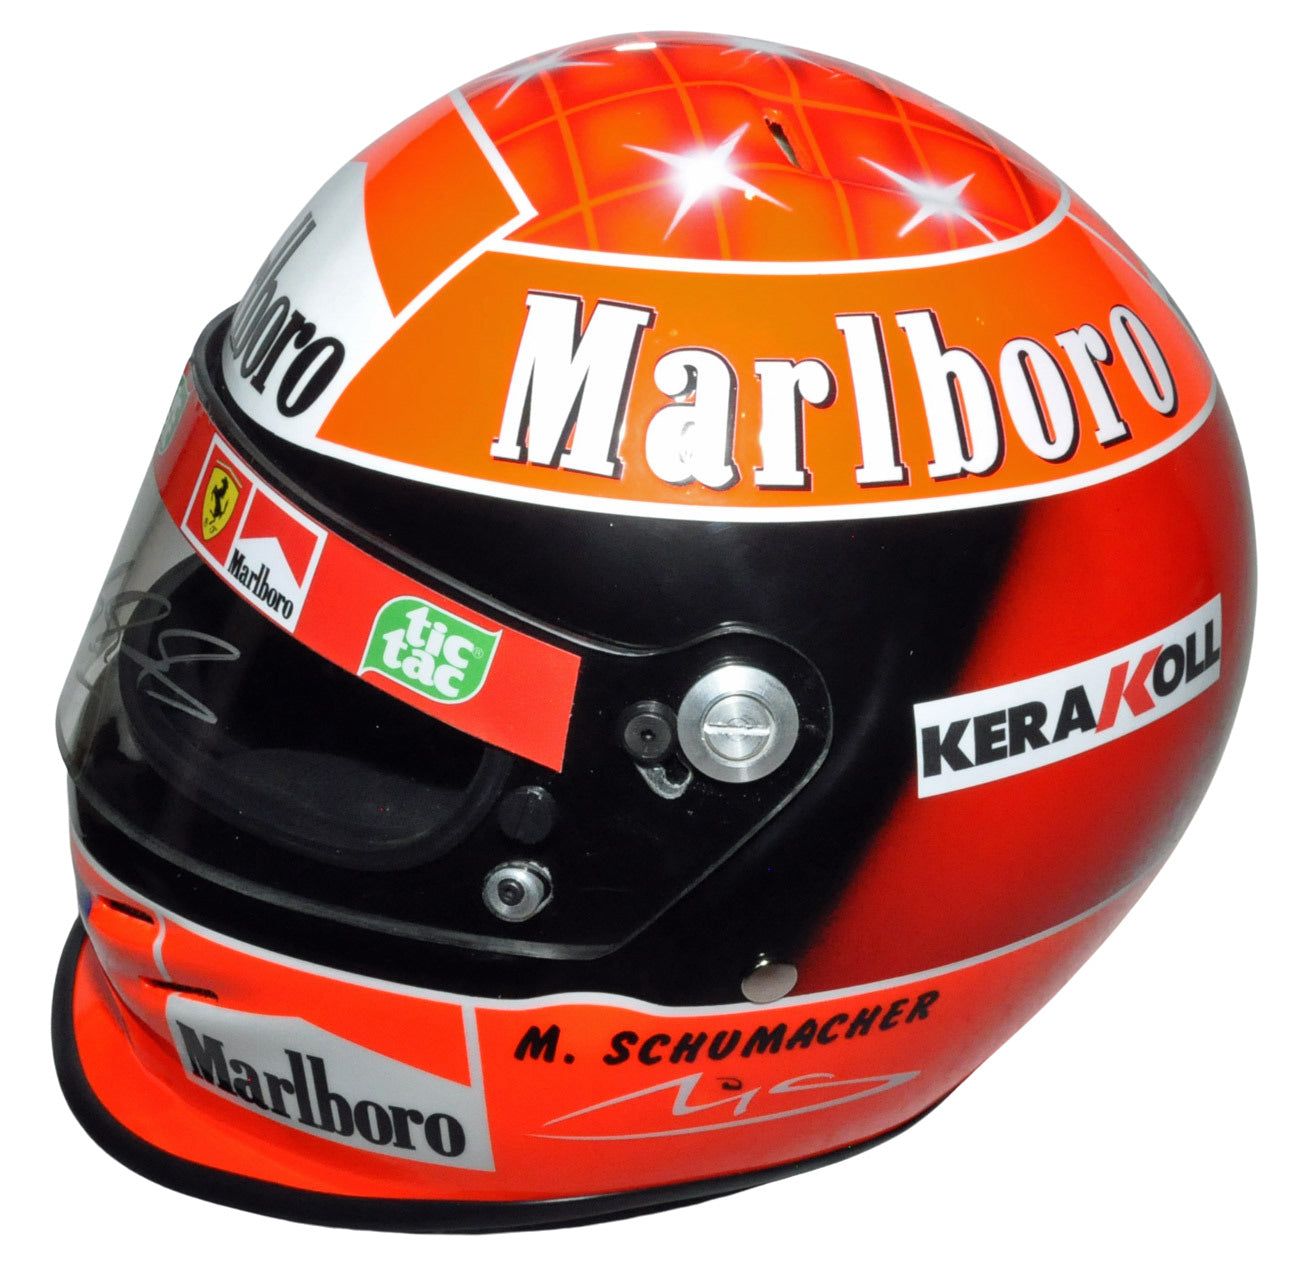 Michael Schumacher Signed F1 Ferrari 2000 Full Scale Replica Helmet - Sold